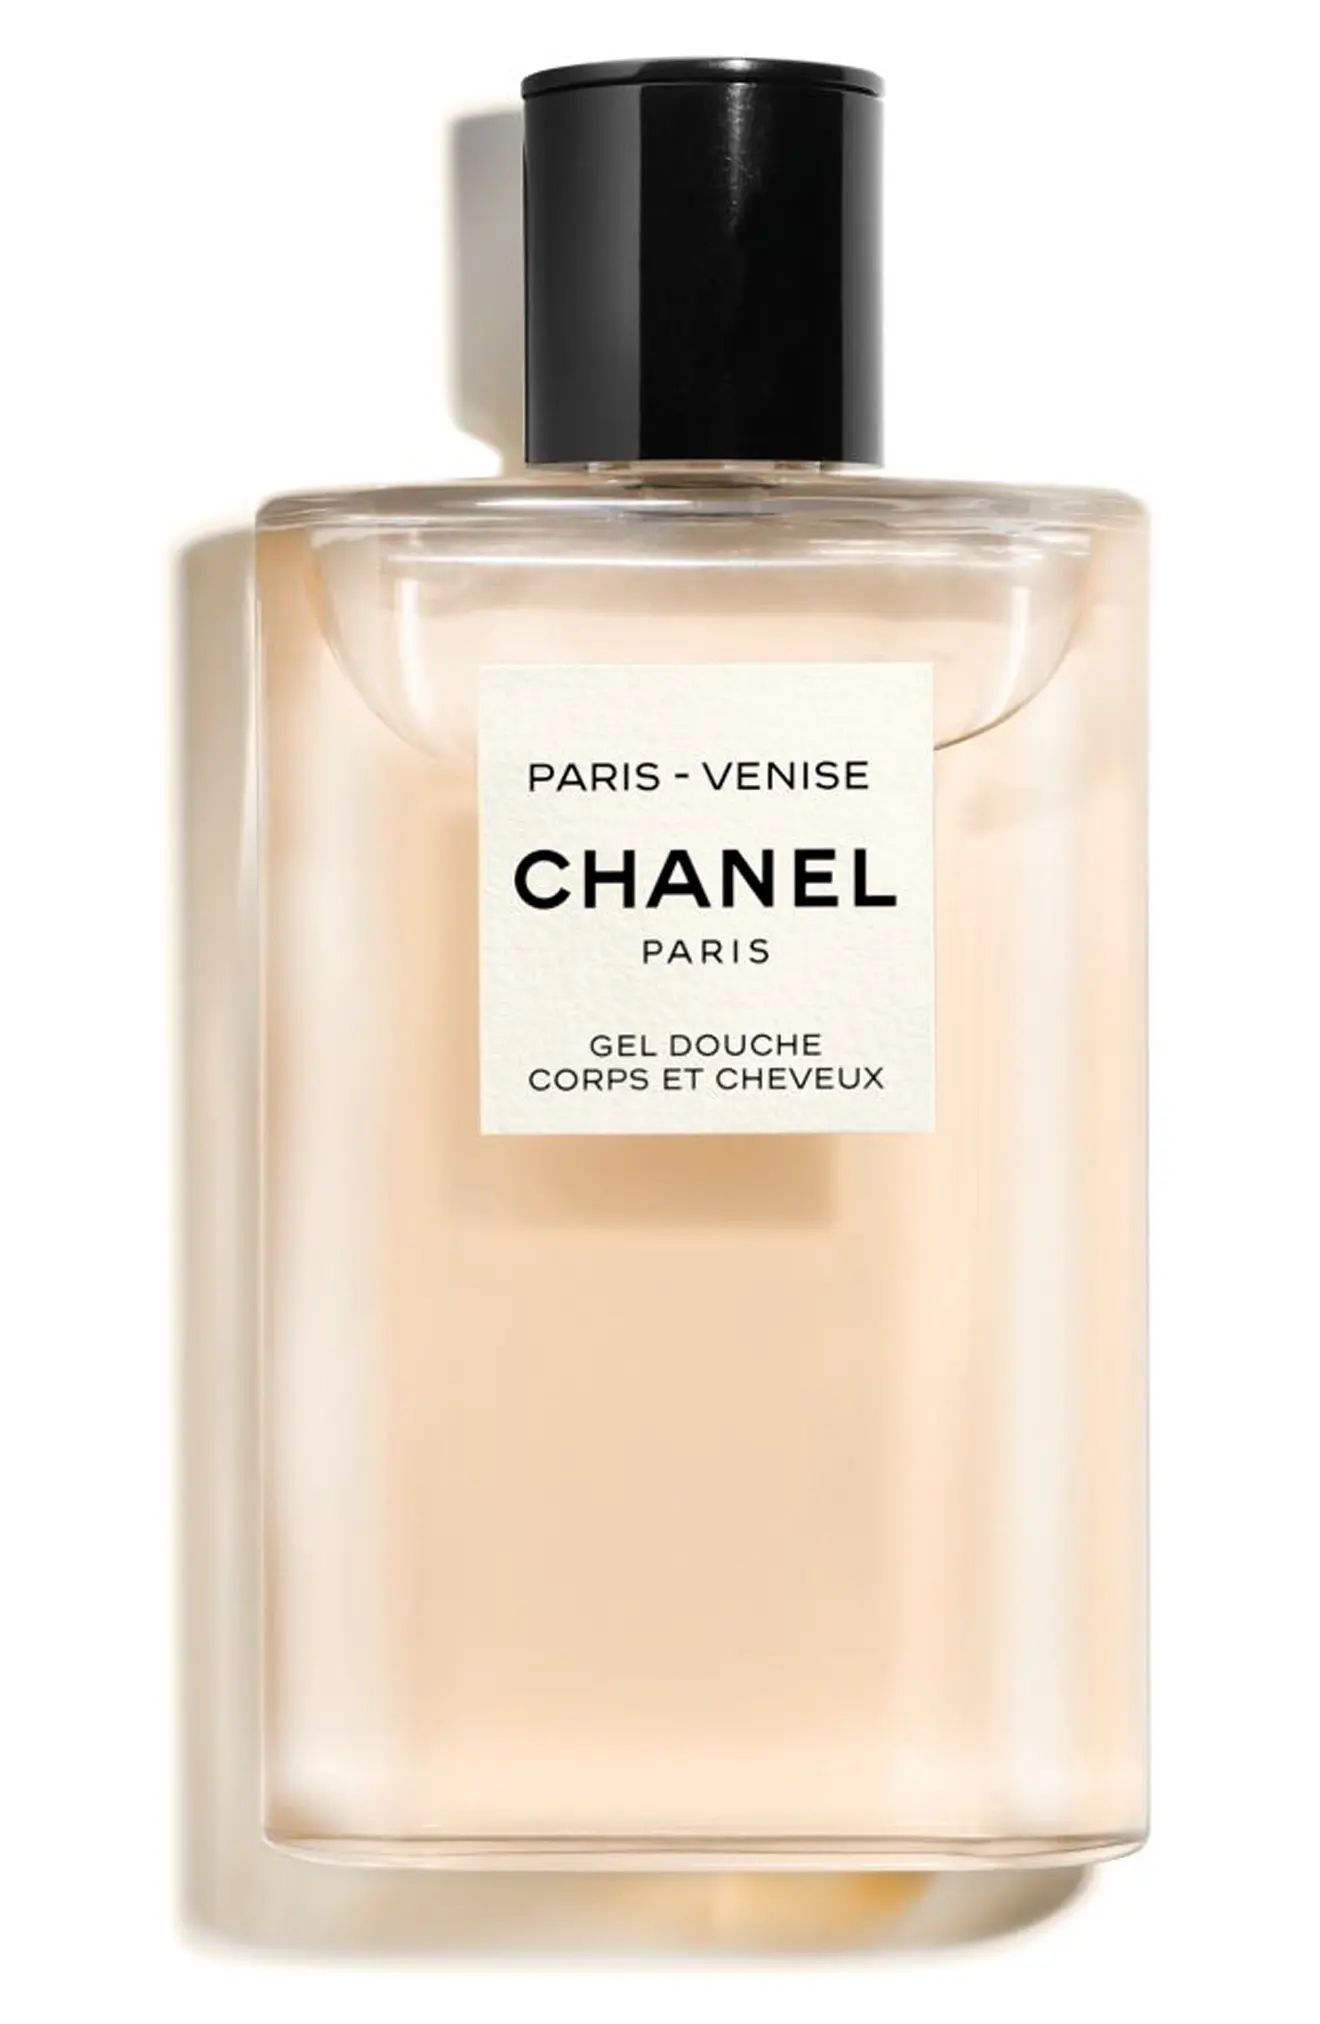 CHANEL LES EAUX DE CHANEL PARIS-VENISE Perfumed Hair and Body Shower Gel (Nordstrom Exclusive) | Nordstrom